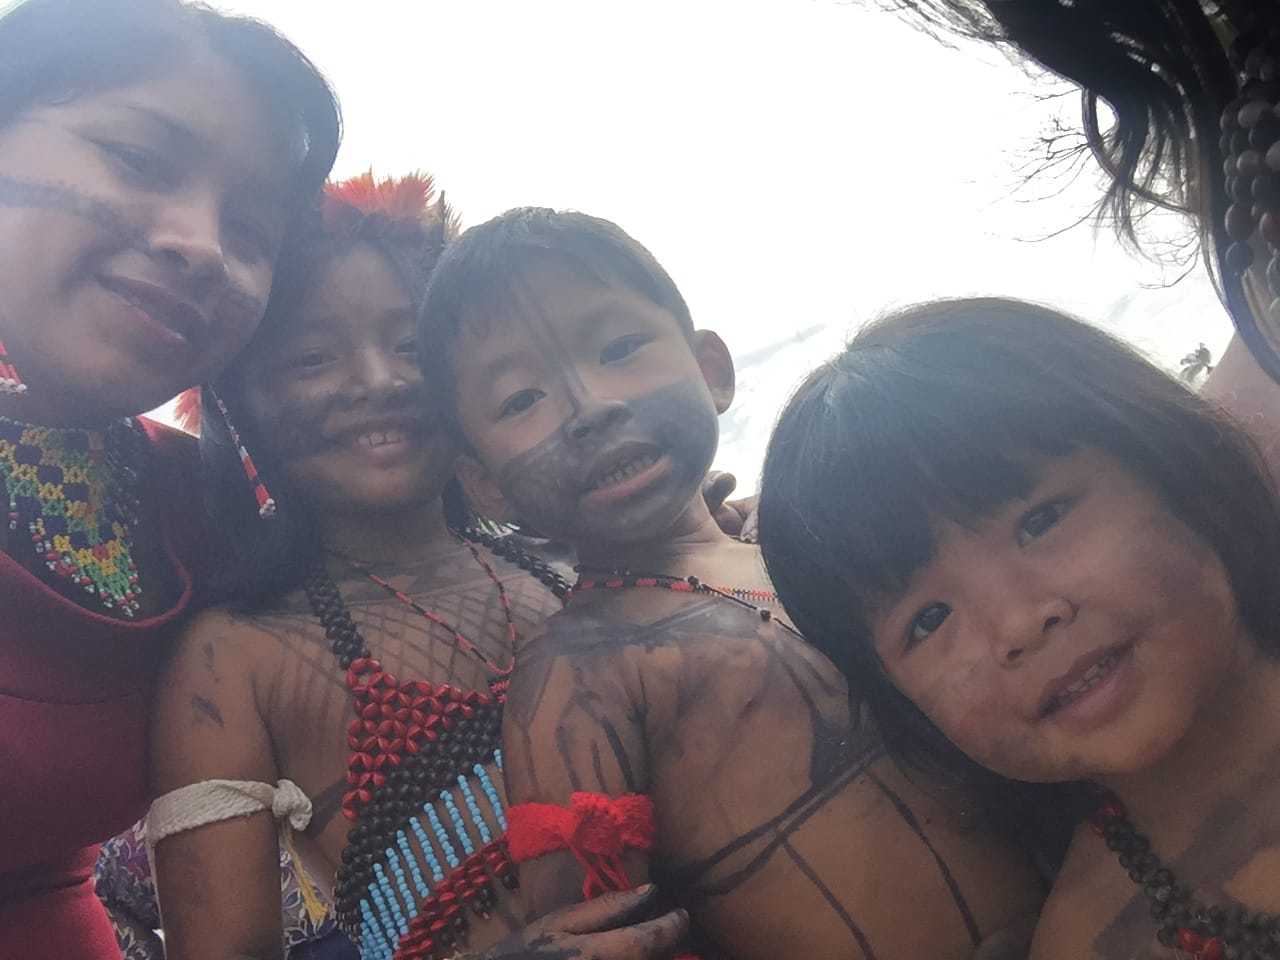  Selfie de uma mulher indígena, do lado direito, da foto, com três crianças indígenas, todas com pinturas espalhadas pelo rosto e corpo.